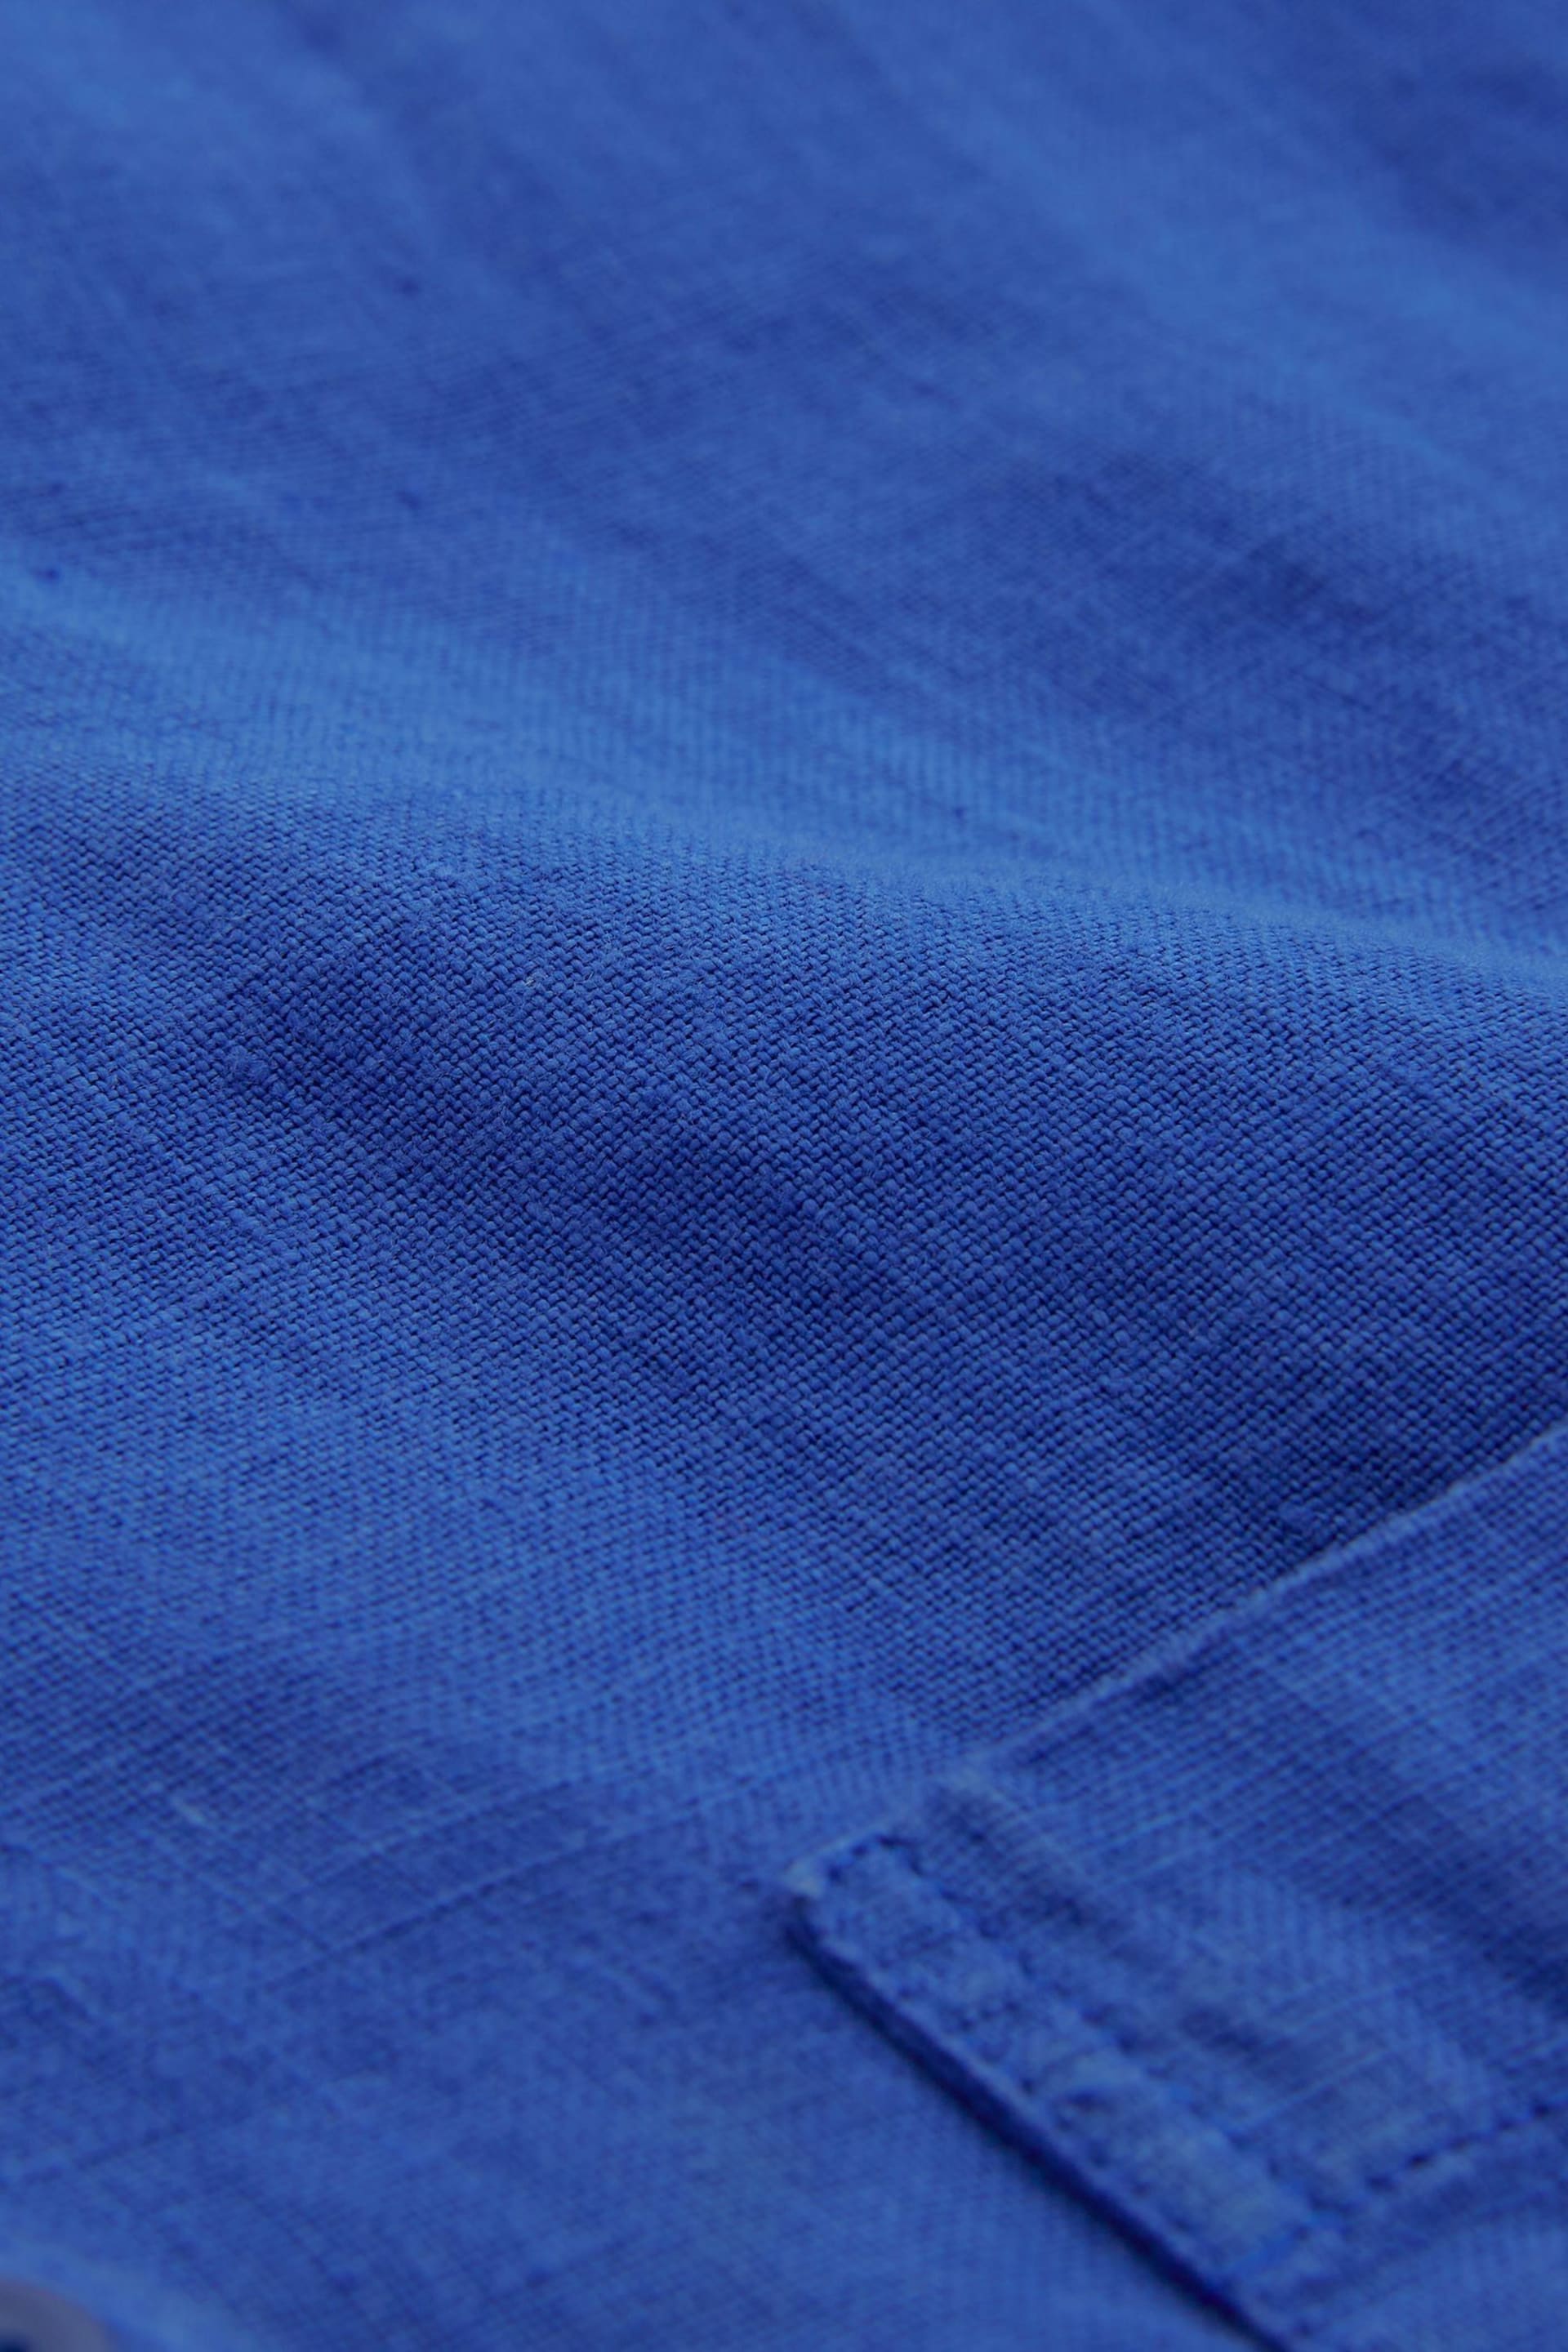 Celtic & Co. Blue Linen Button Through Dress - Image 7 of 7